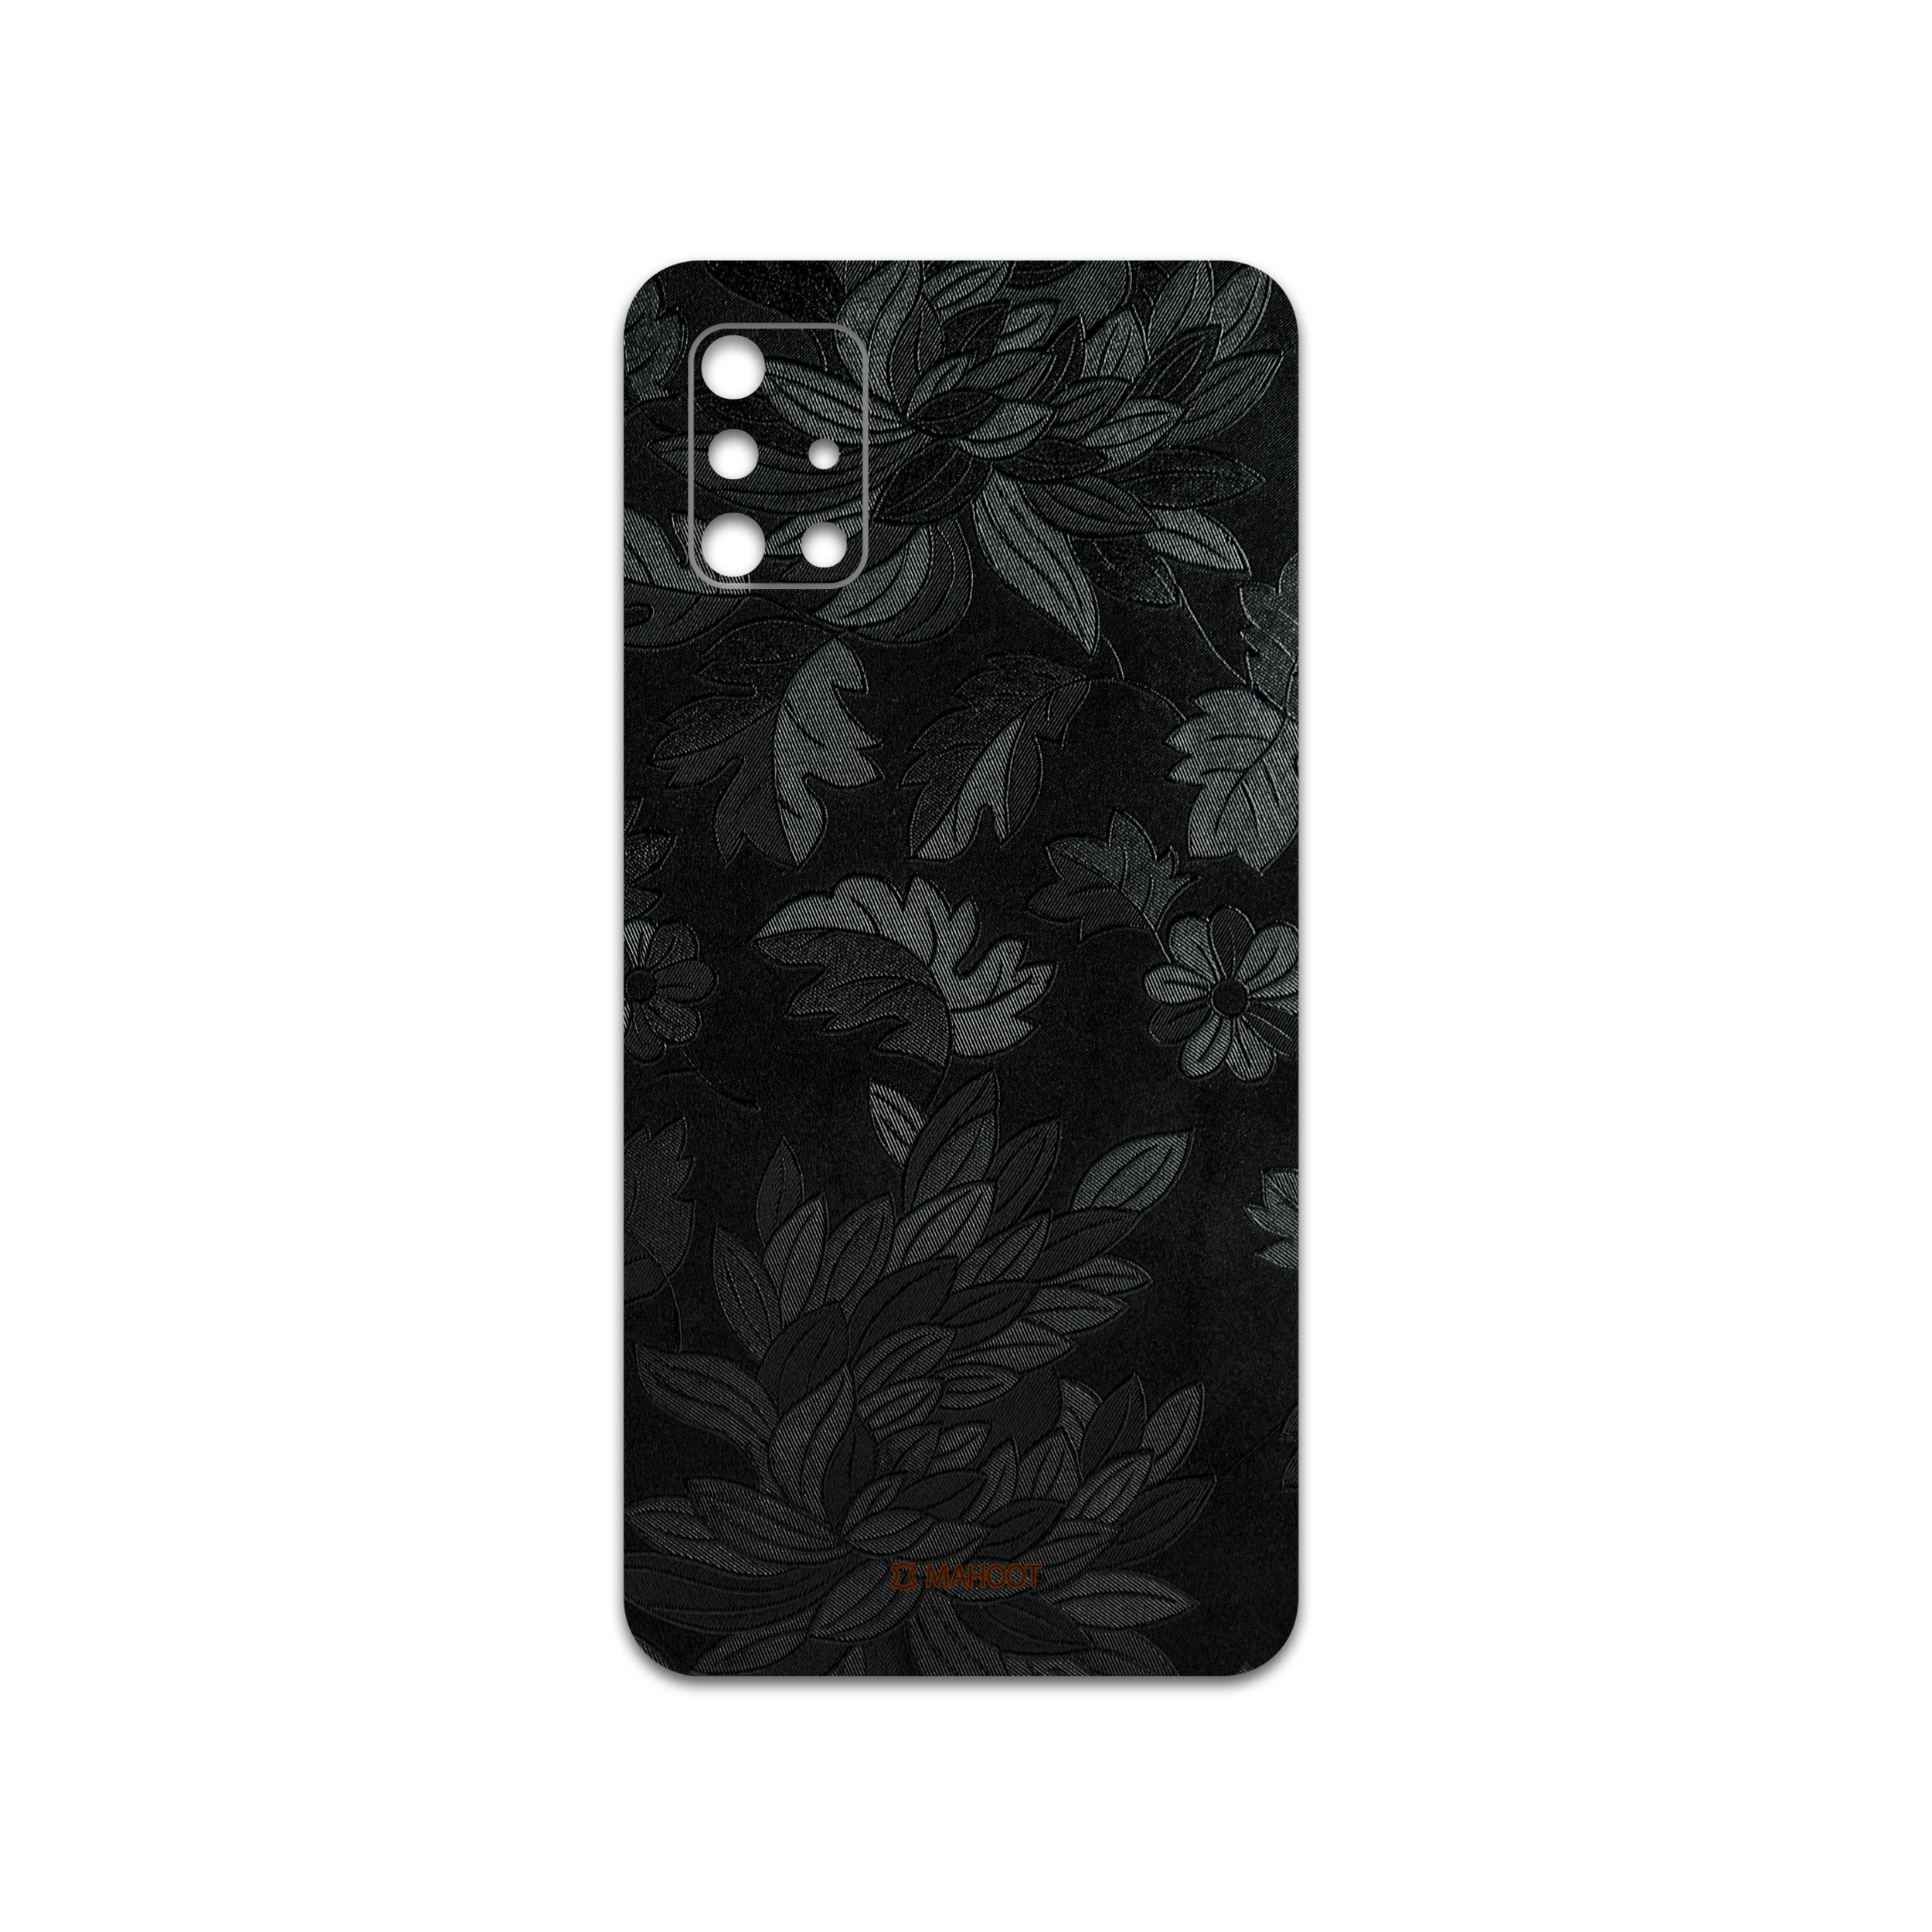 برچسب پوششی ماهوت مدل Black-Wildflower مناسب برای گوشی موبایل سامسونگ Galaxy A51